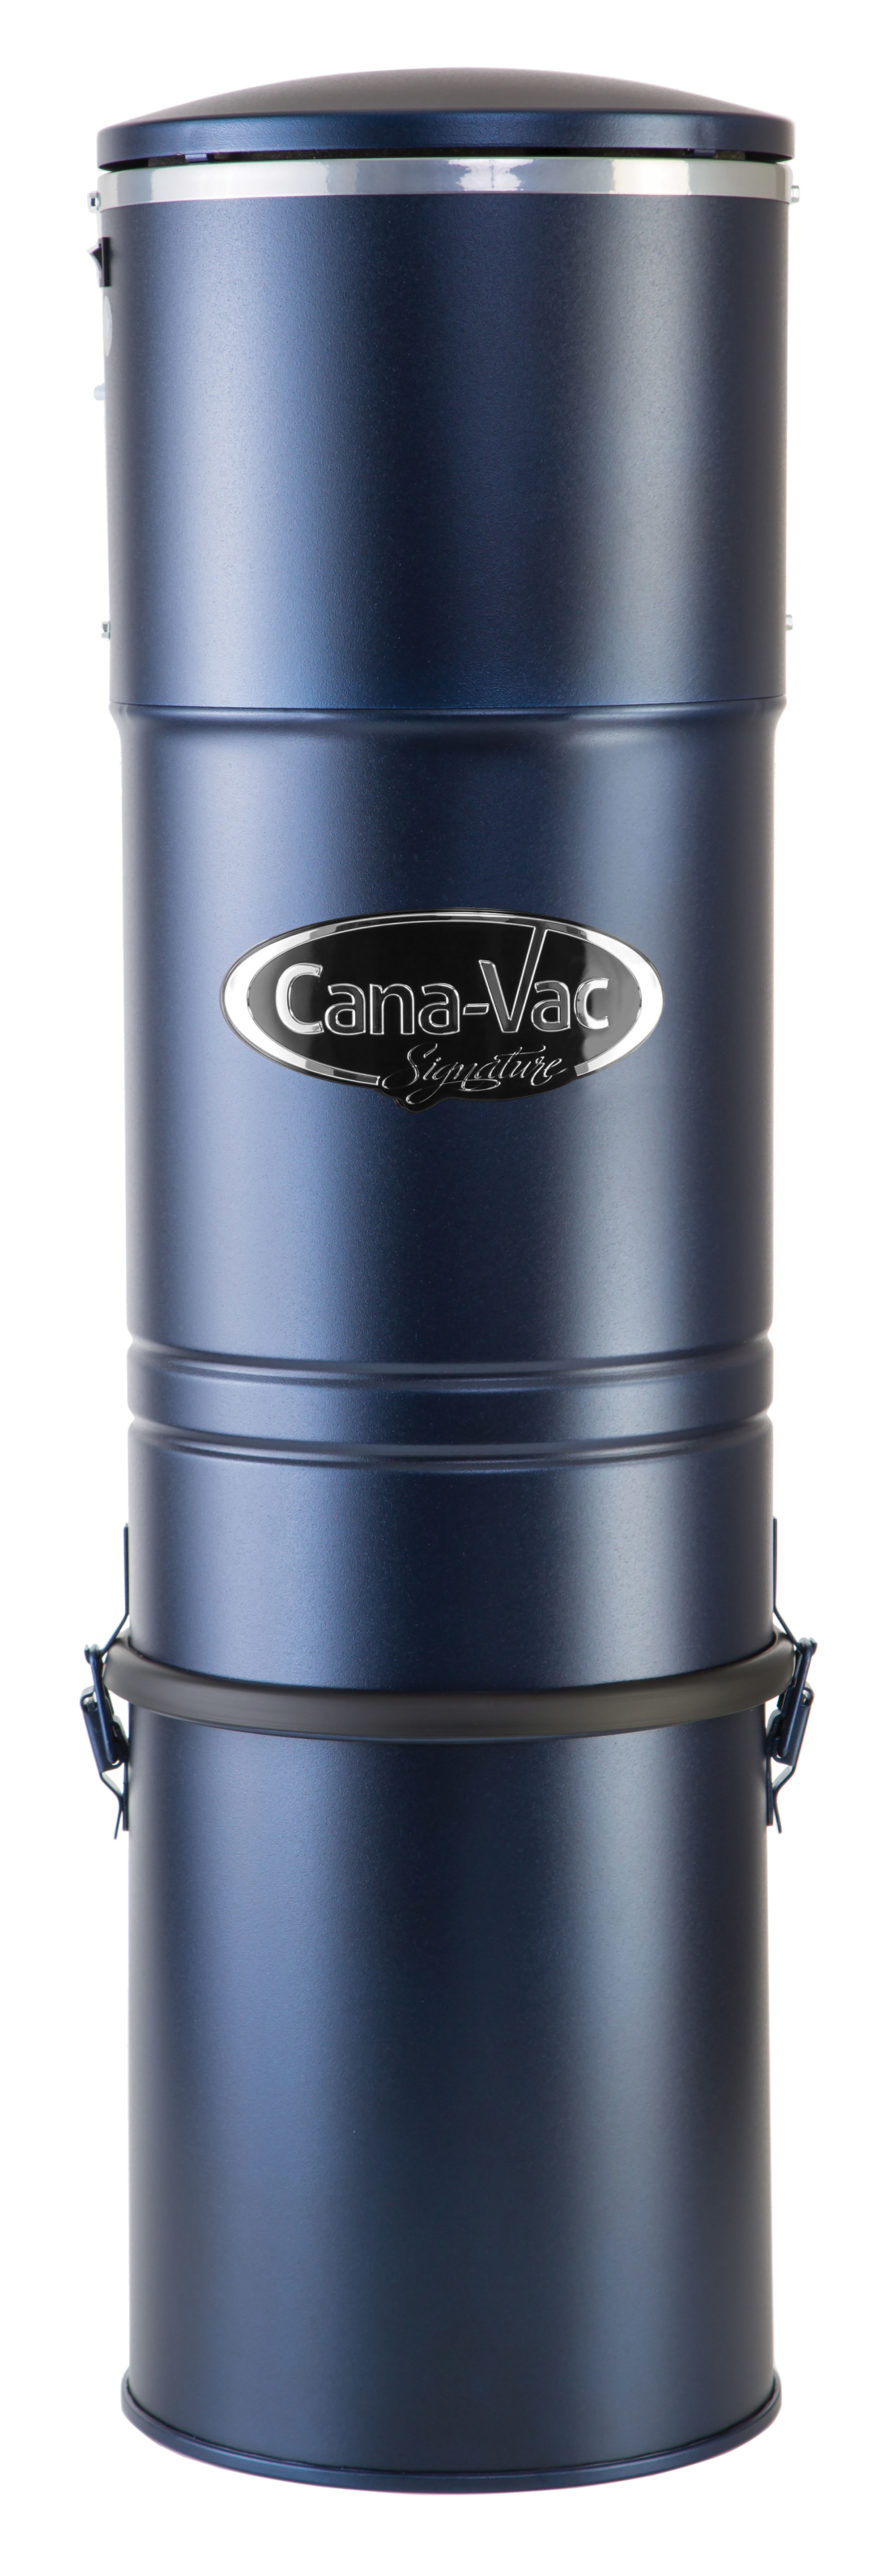 Cana-Vac Central Vacuum LS 650